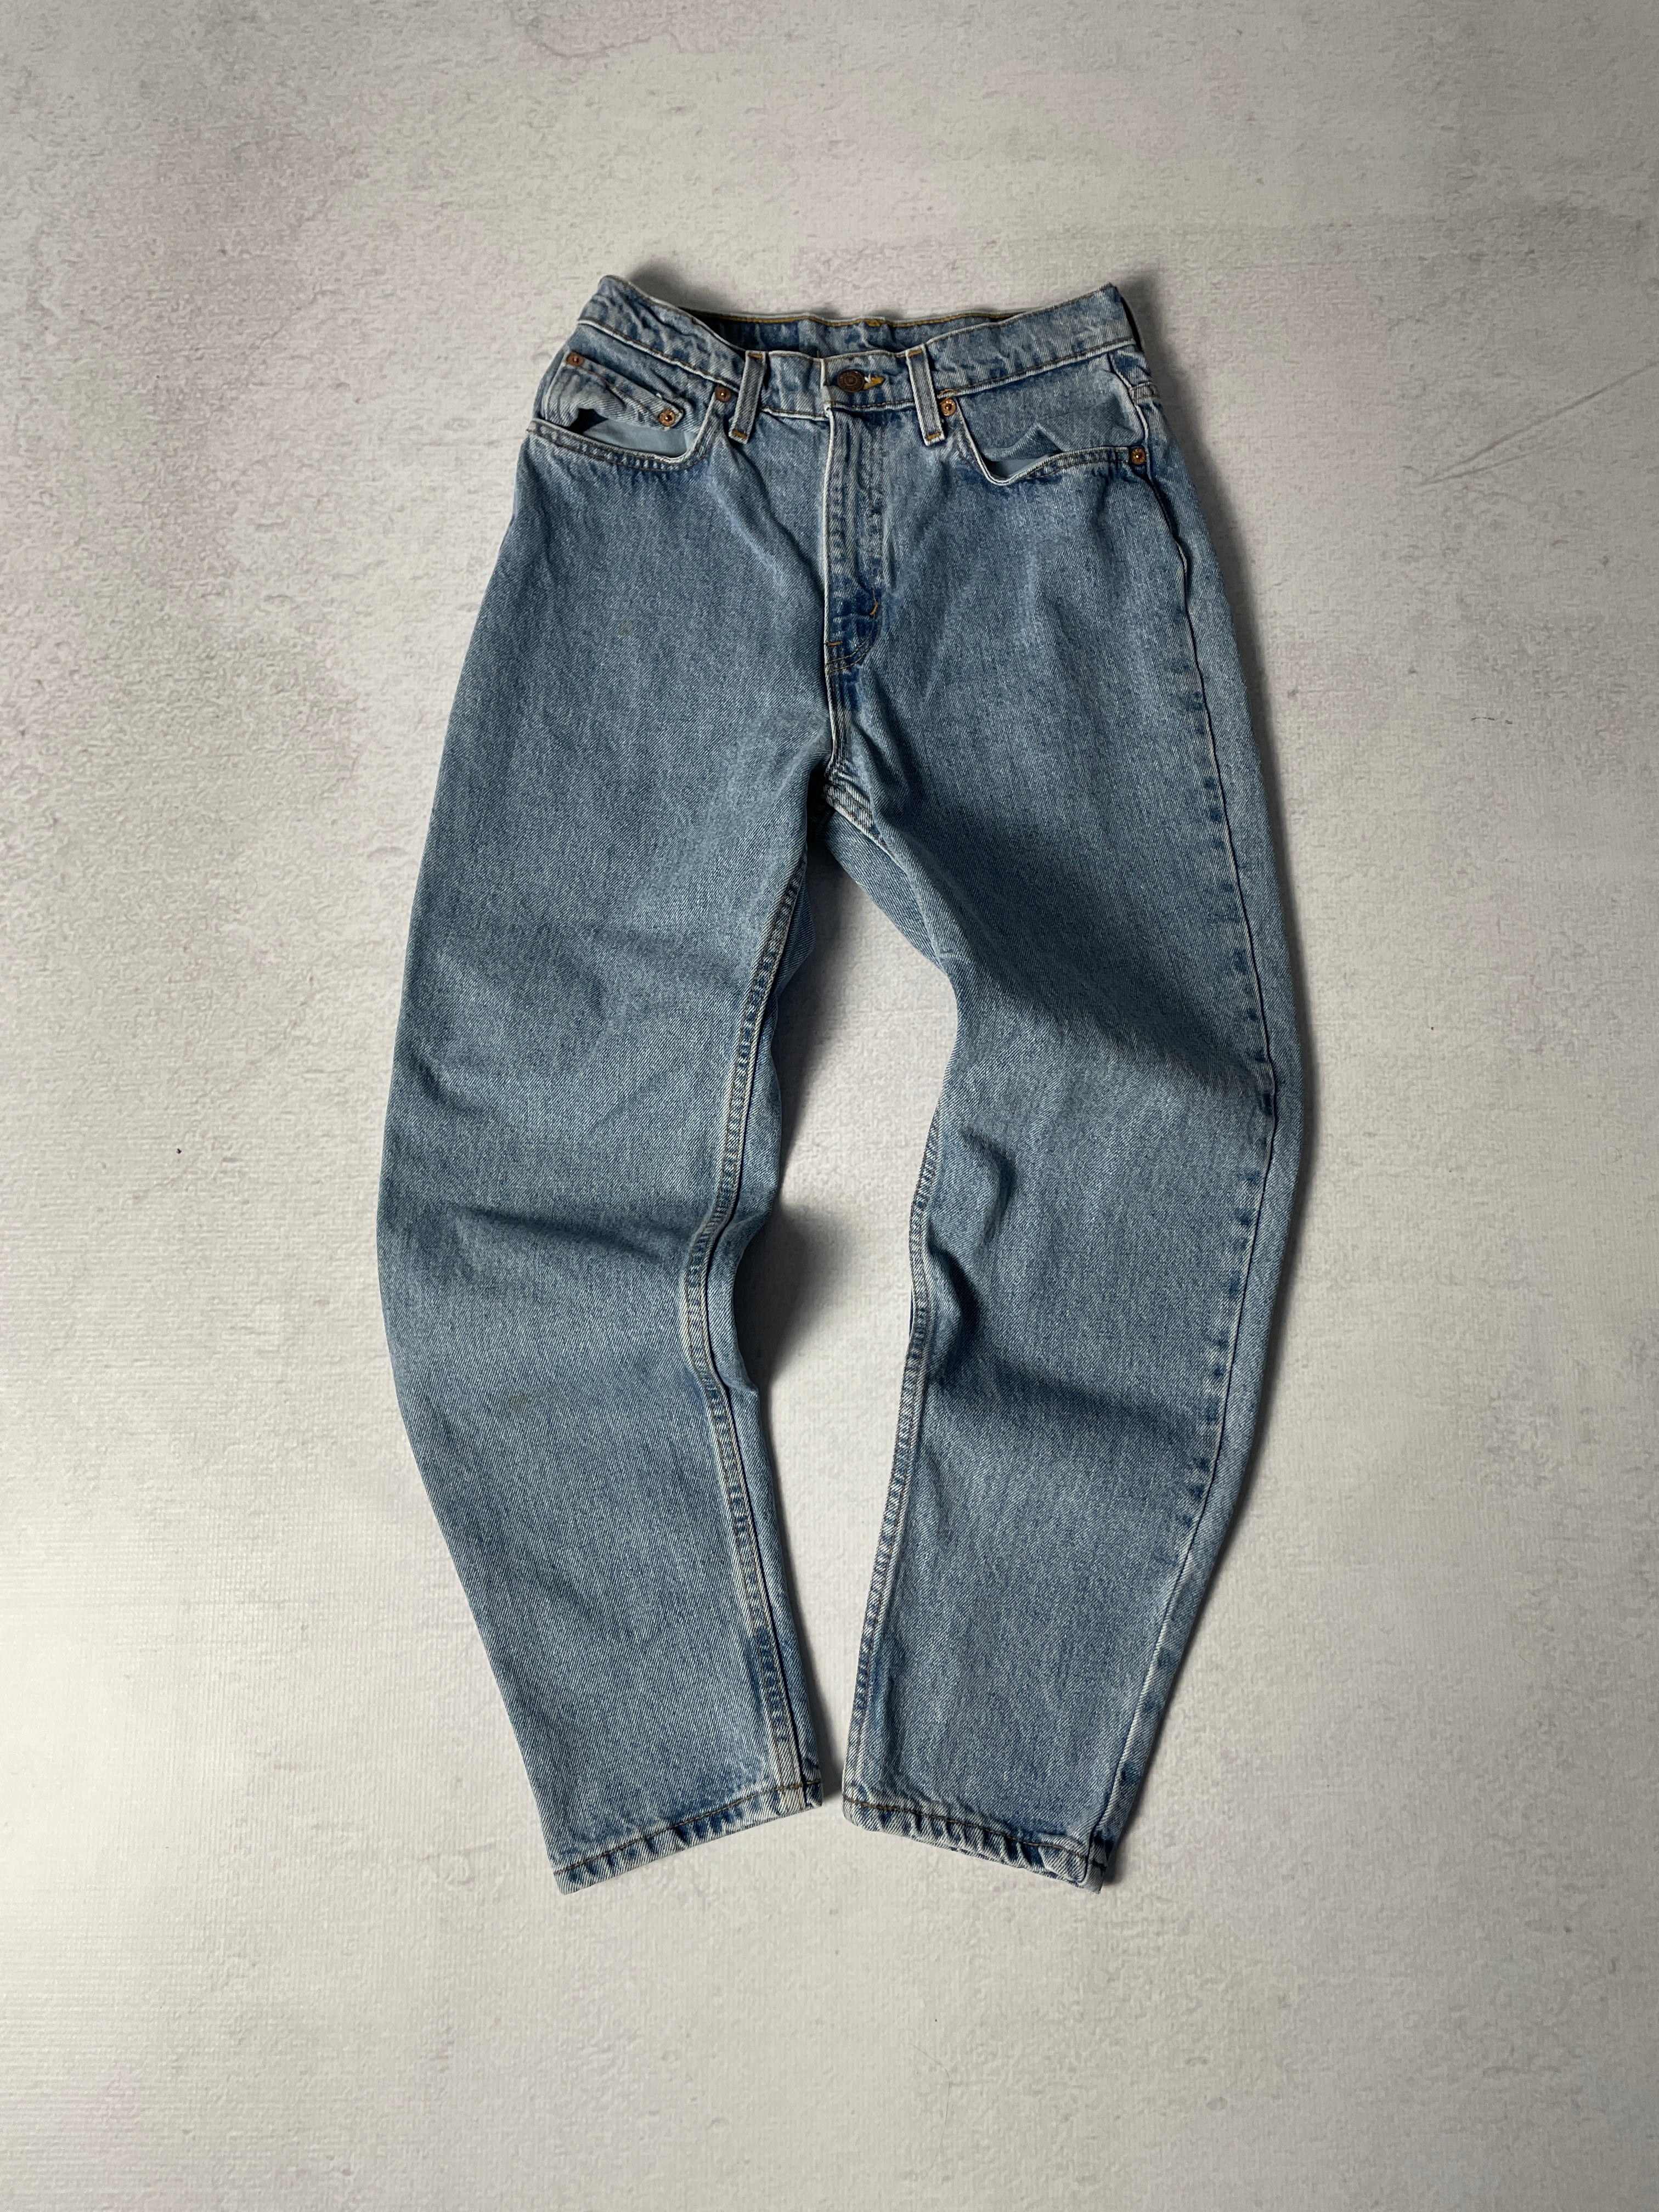 Vintage Levis 521 Jeans - Women's 28Wx29L